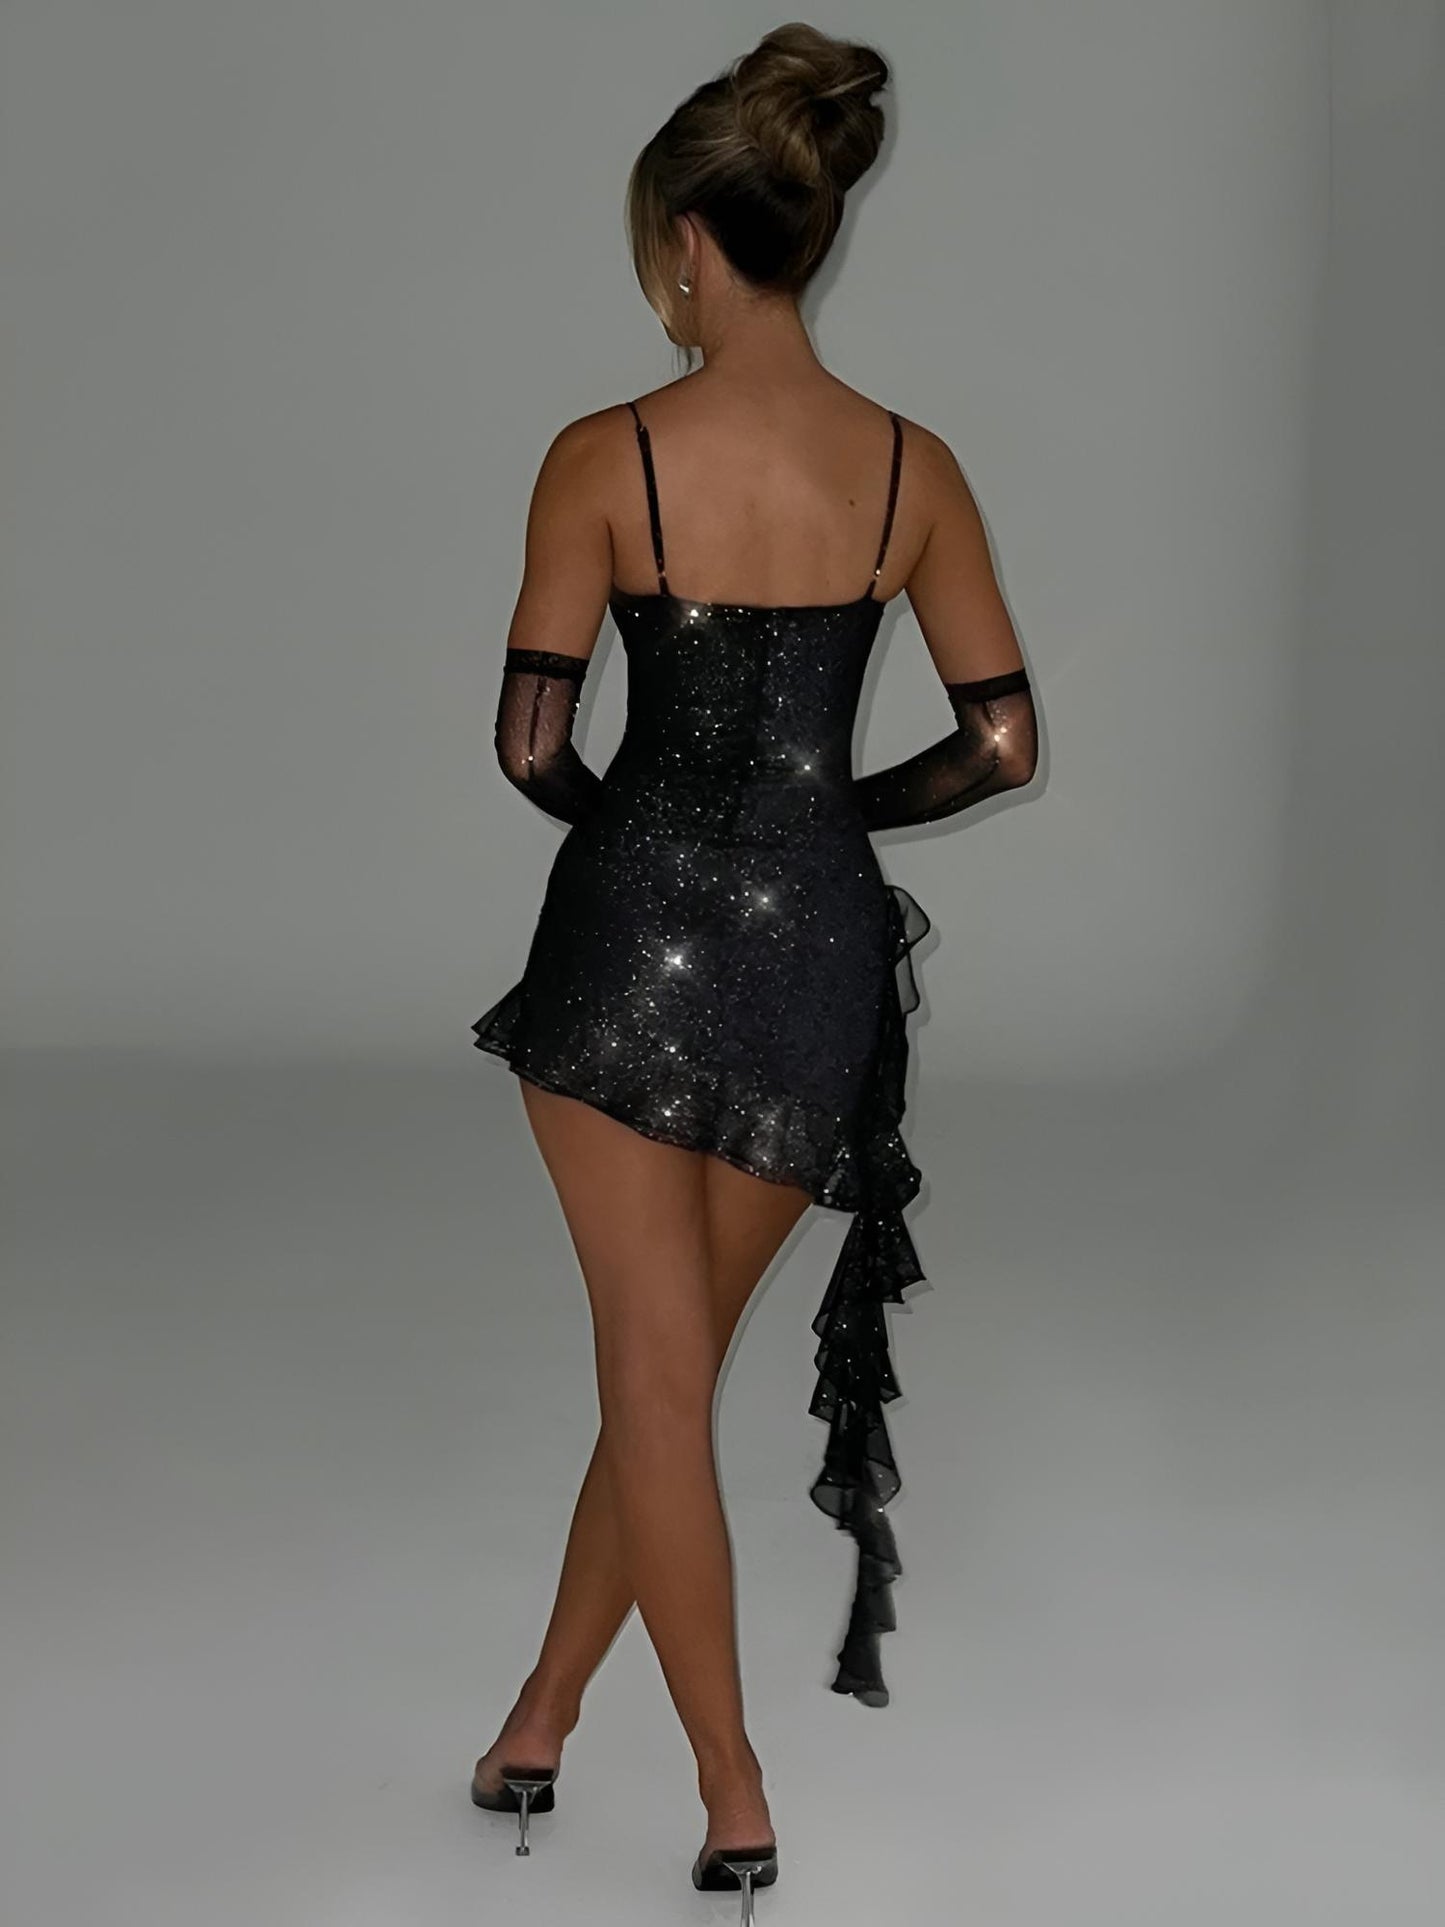 Stellar Sparkle: Glamorous Sequin Mini Dress for Women